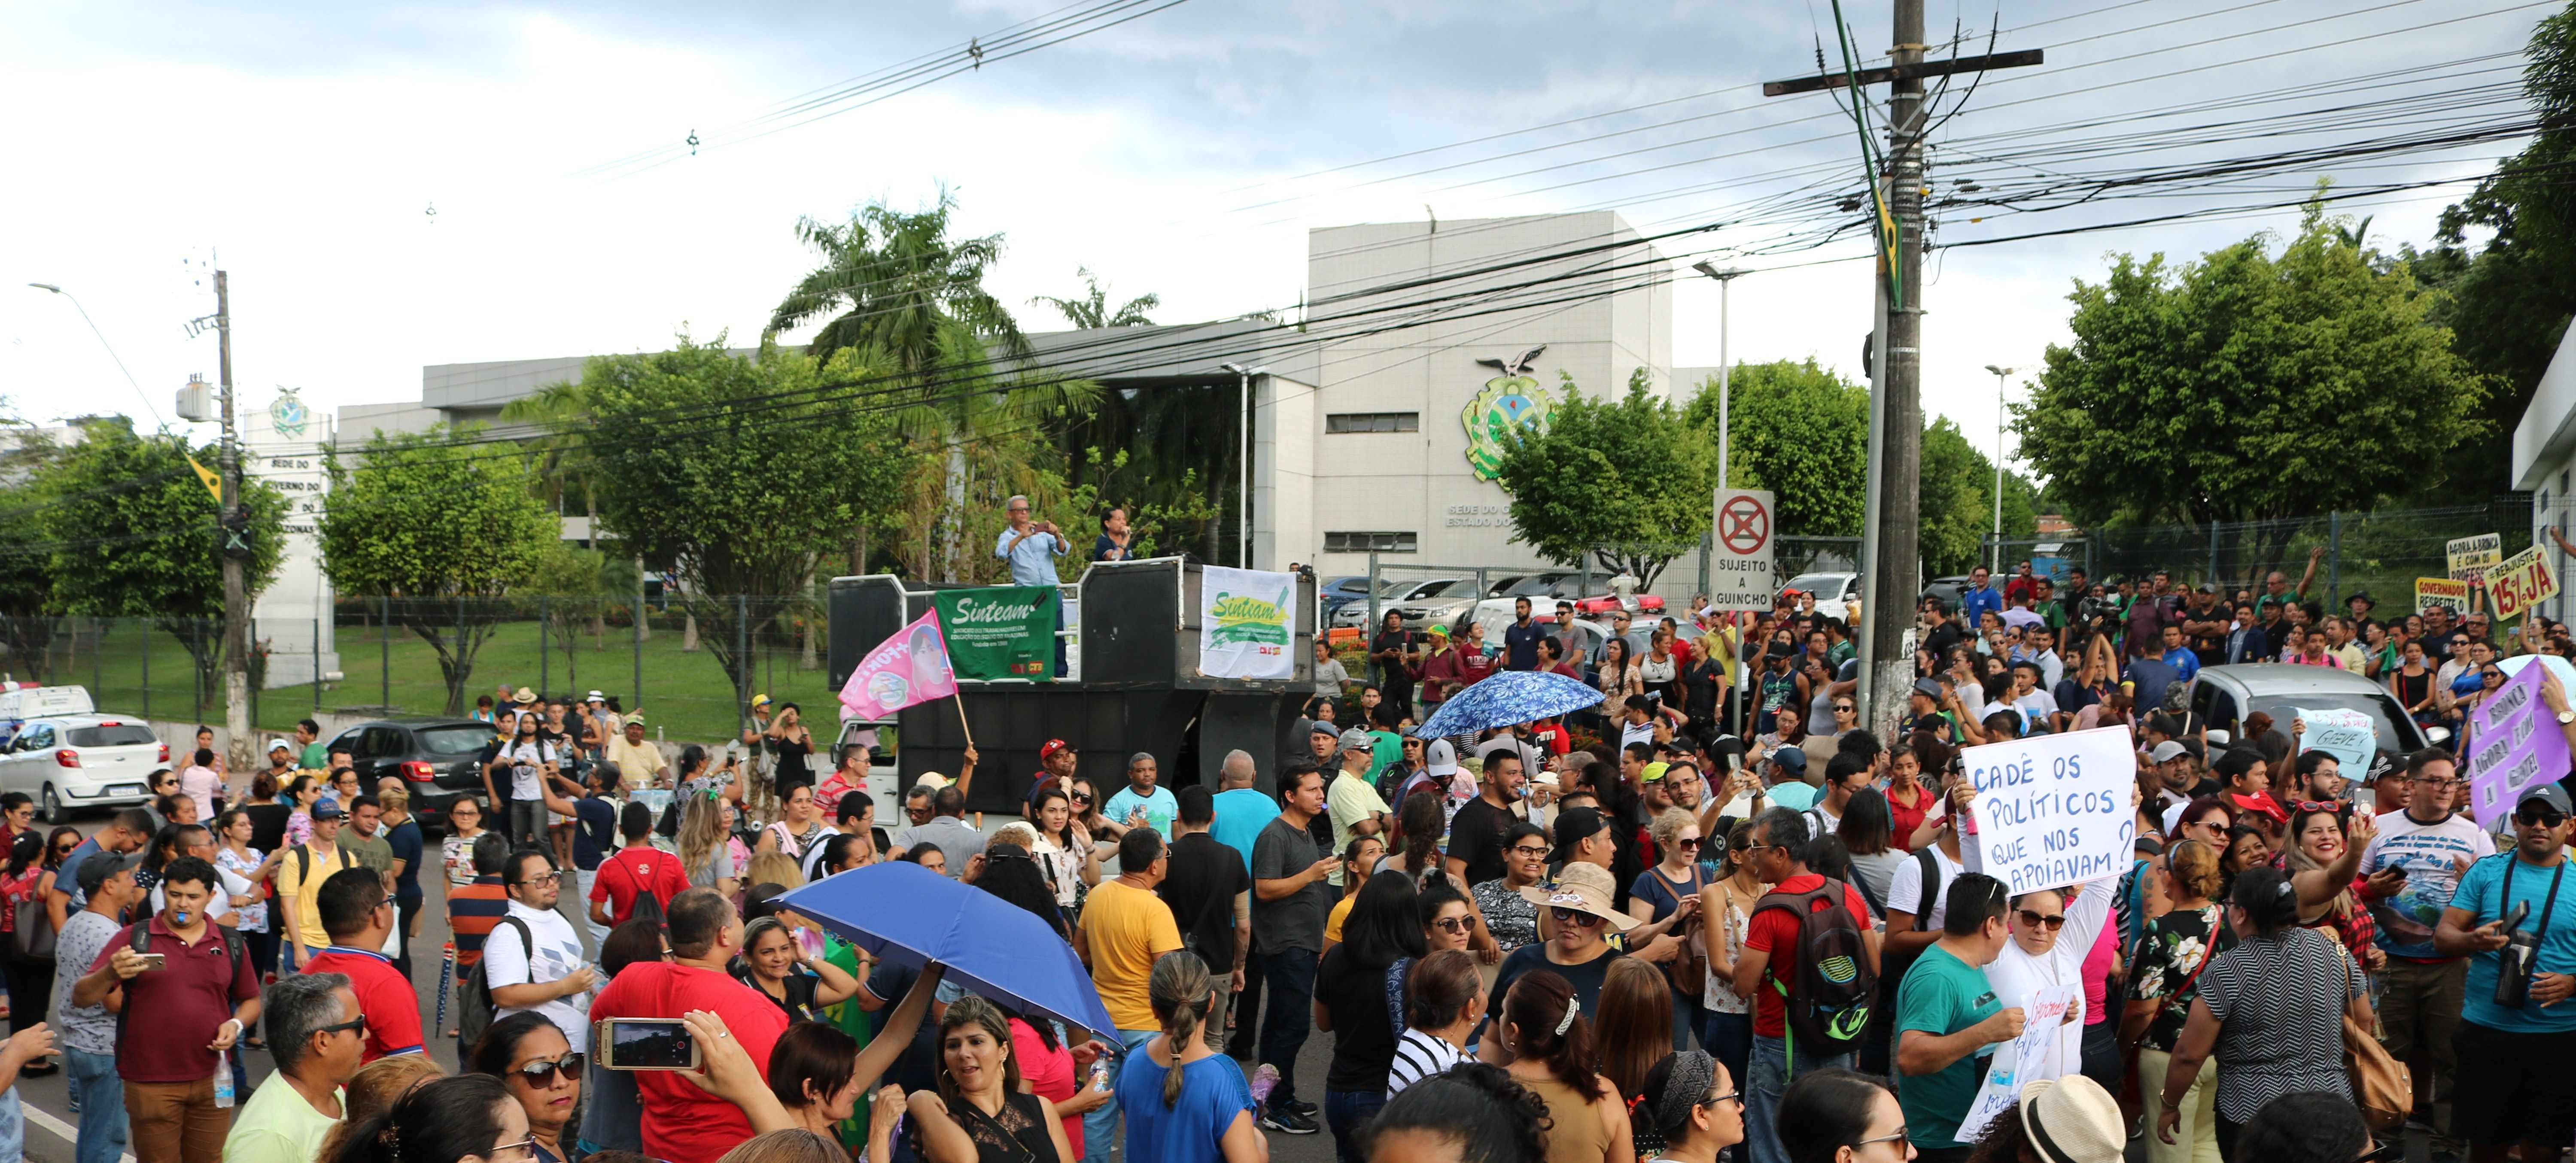 Professores do Amazonas recebem apoio nacional para greve